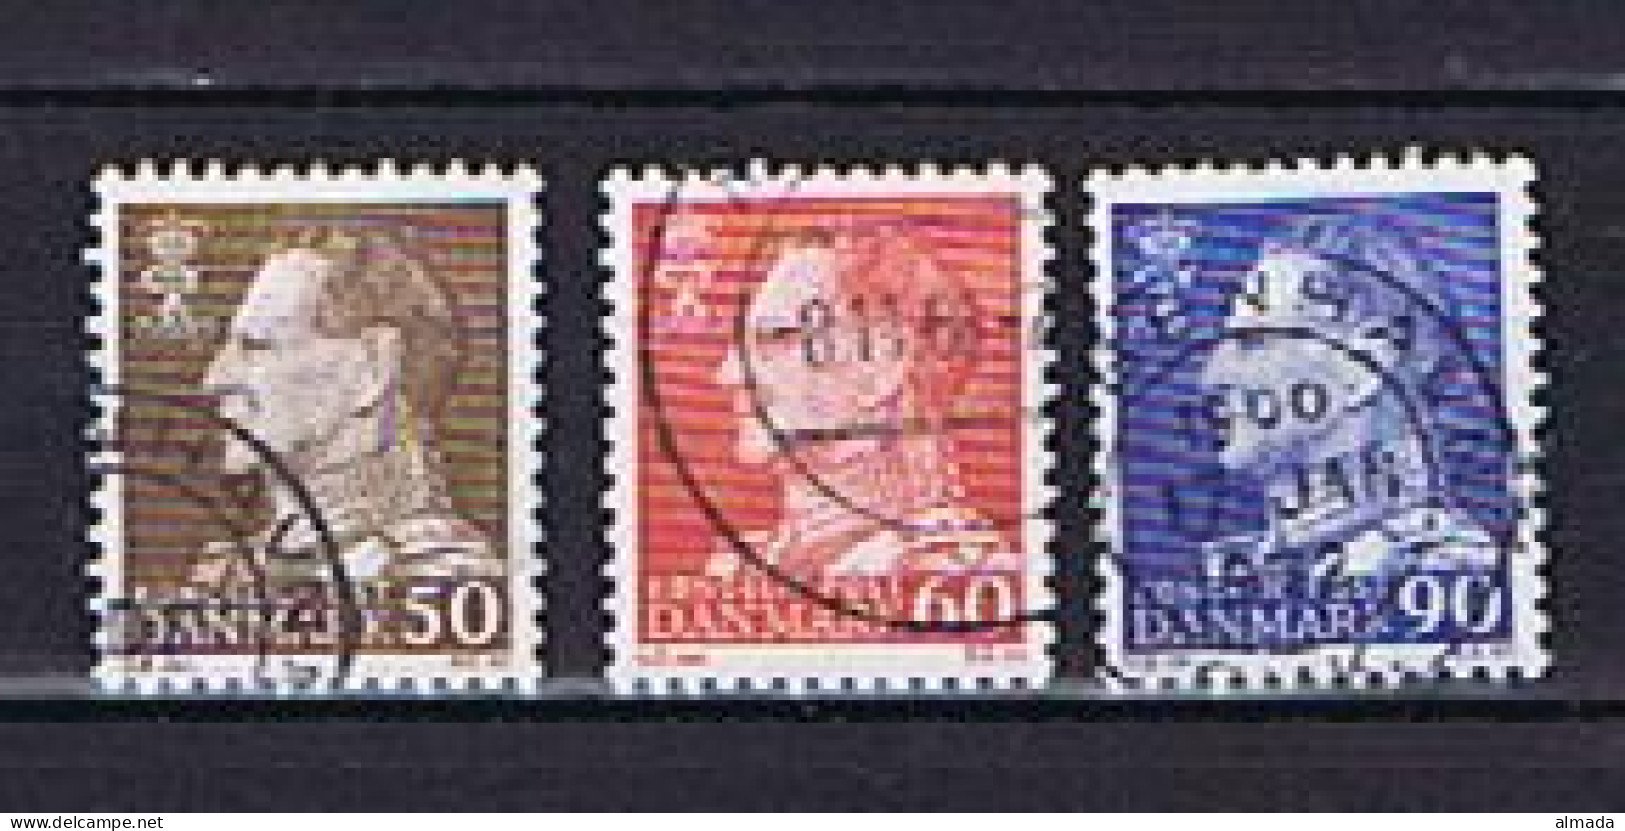 Dänemark, Denmark 1967: Michel 457-458, 460 Fluor. Papier Gestempelt, Used - Usati